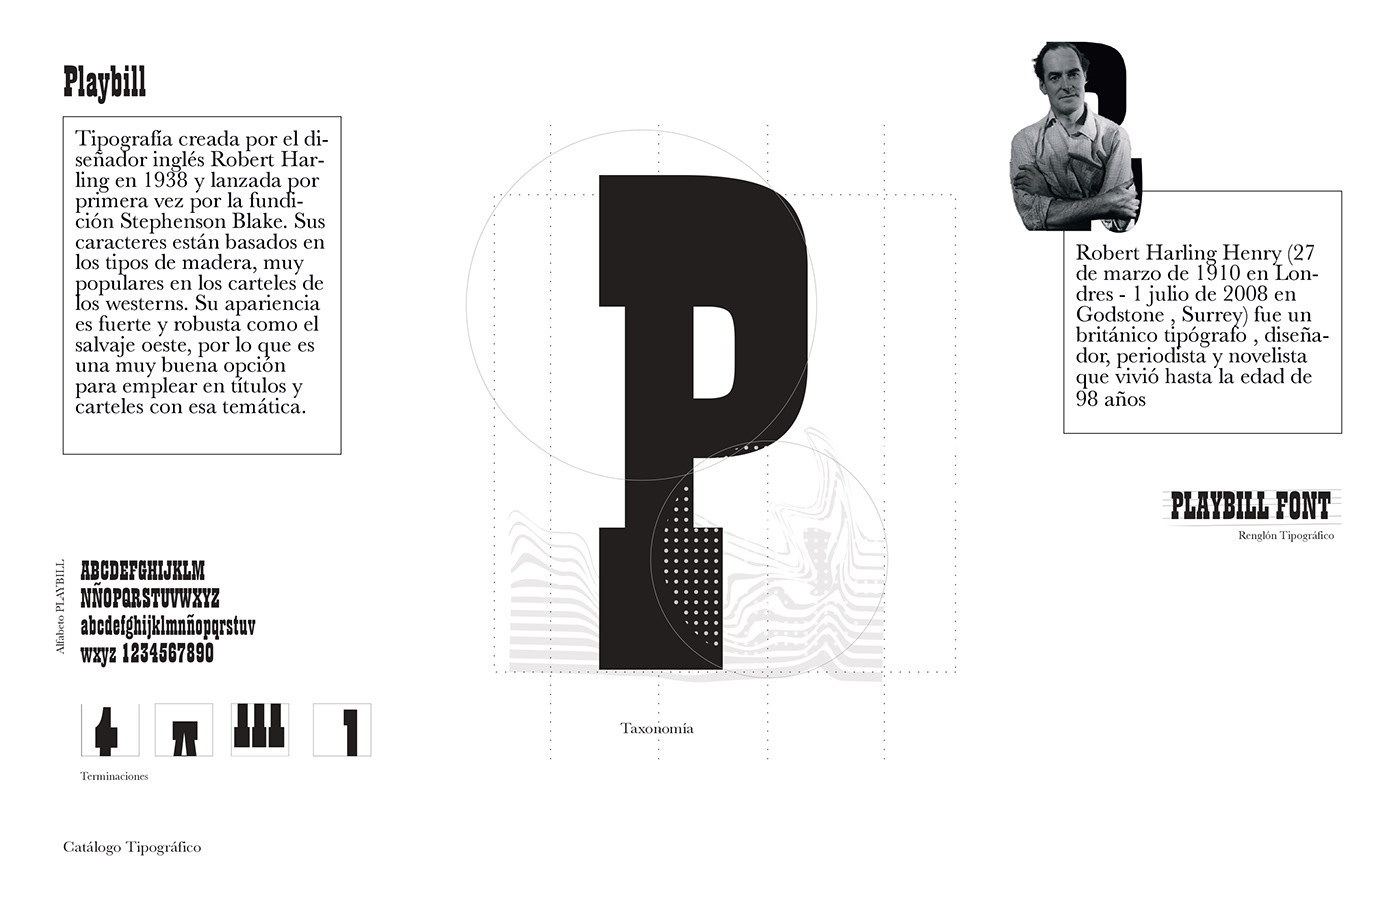 bernie echeverria CATÁLOGO BERNIE Catálogo tipográfico Diseño editorial tipografia maquetación catalogo